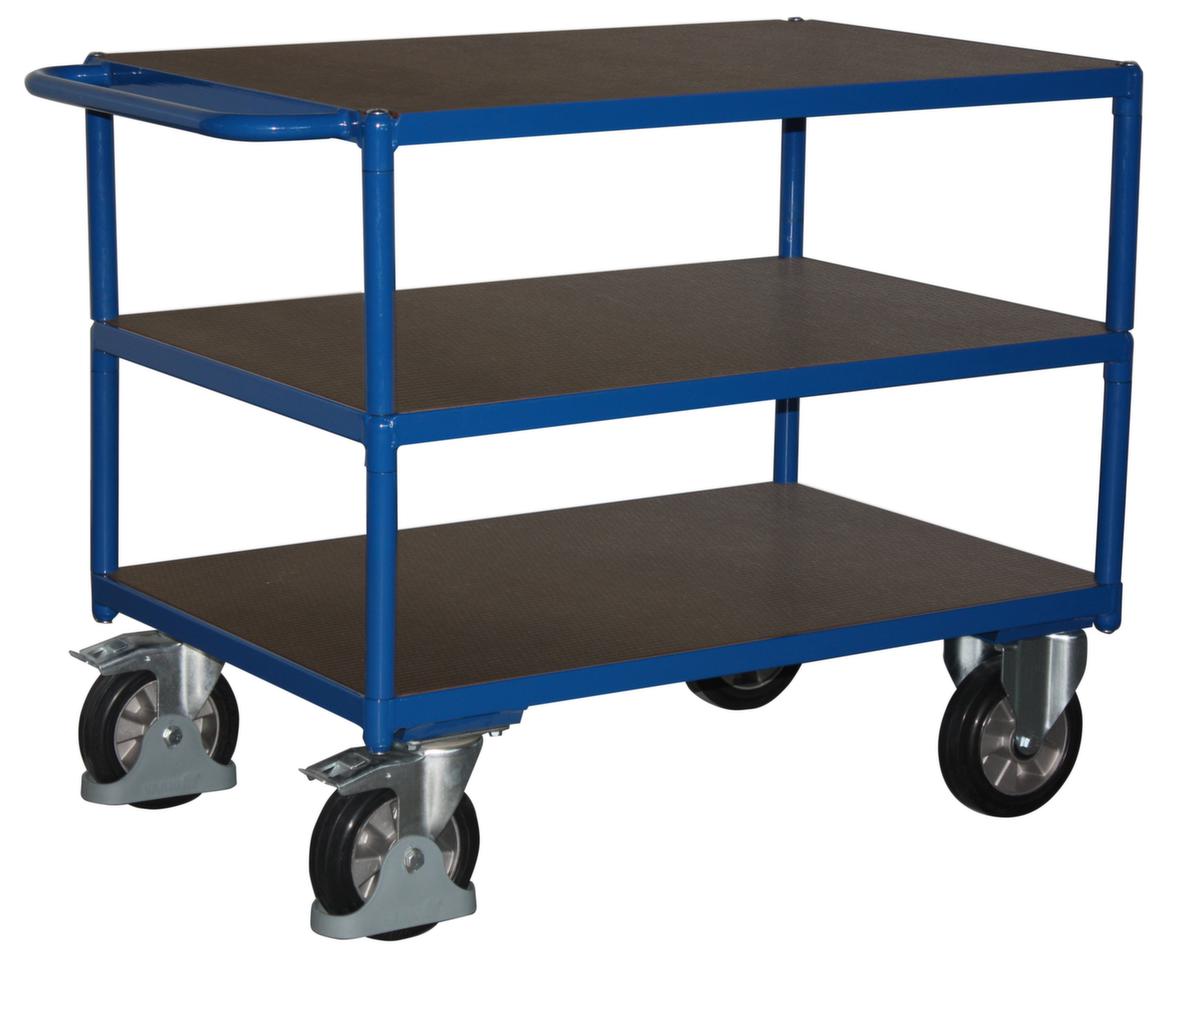 VARIOfit Chariot de table avec étagères antidérapantes 1595x800 mm, force 1000 kg, 3 plateaux  ZOOM